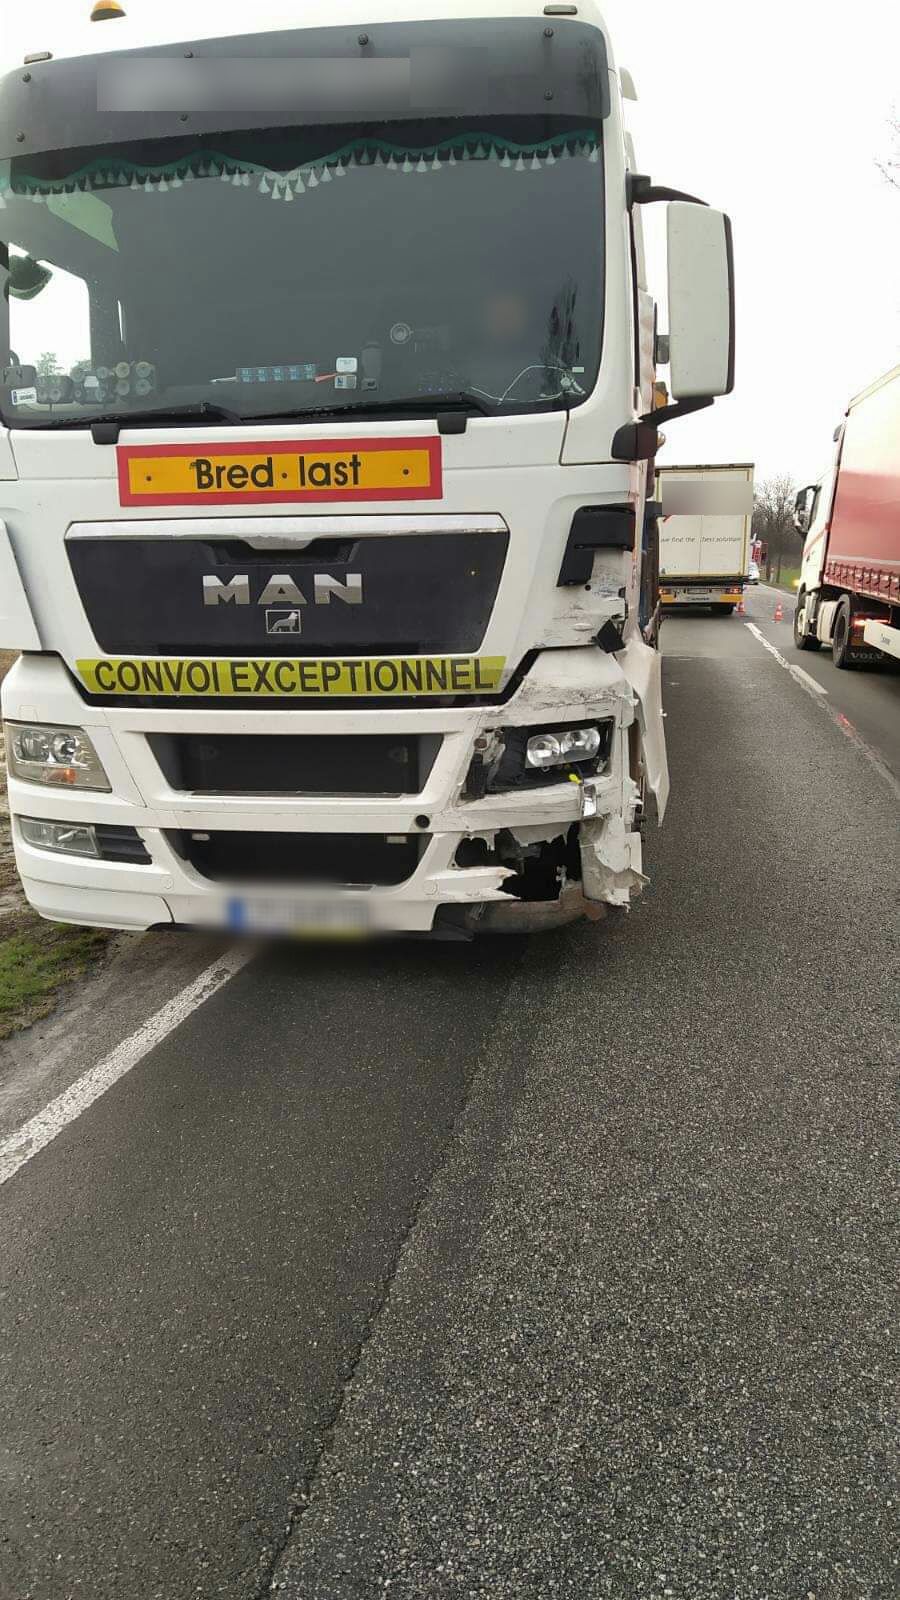 Wypadek na trasie Kraśnik – Janów Lubelski. Po zderzeniu ciężarówki z osobówką występują utrudnienia w ruchu (zdjęcia)